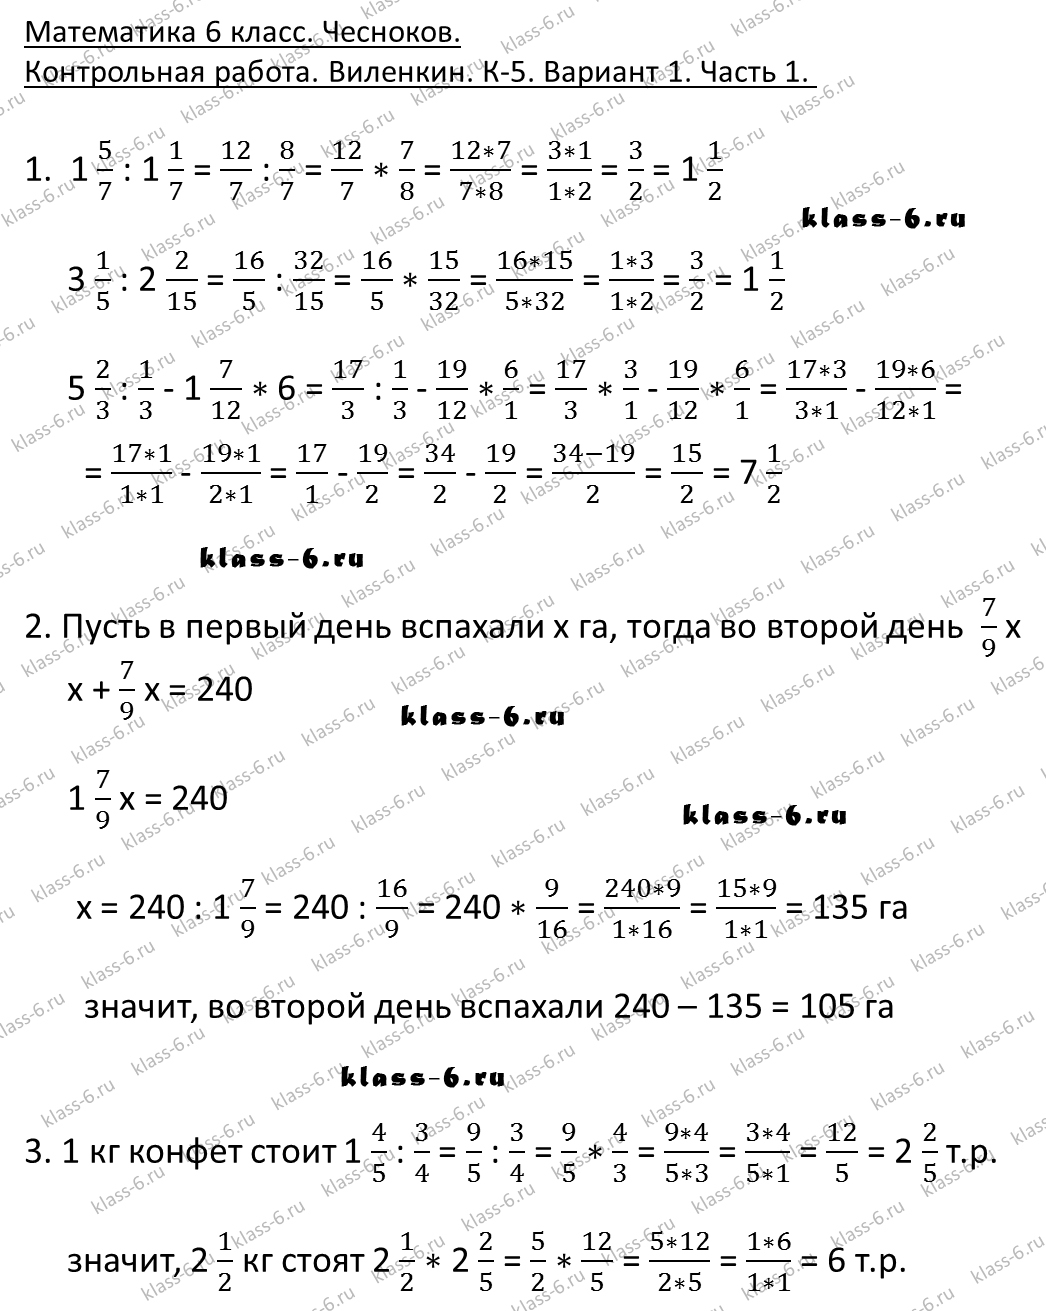 Ответы на контрольные работы по алгебре 6 класс вариант-1 к-5 виленкин п